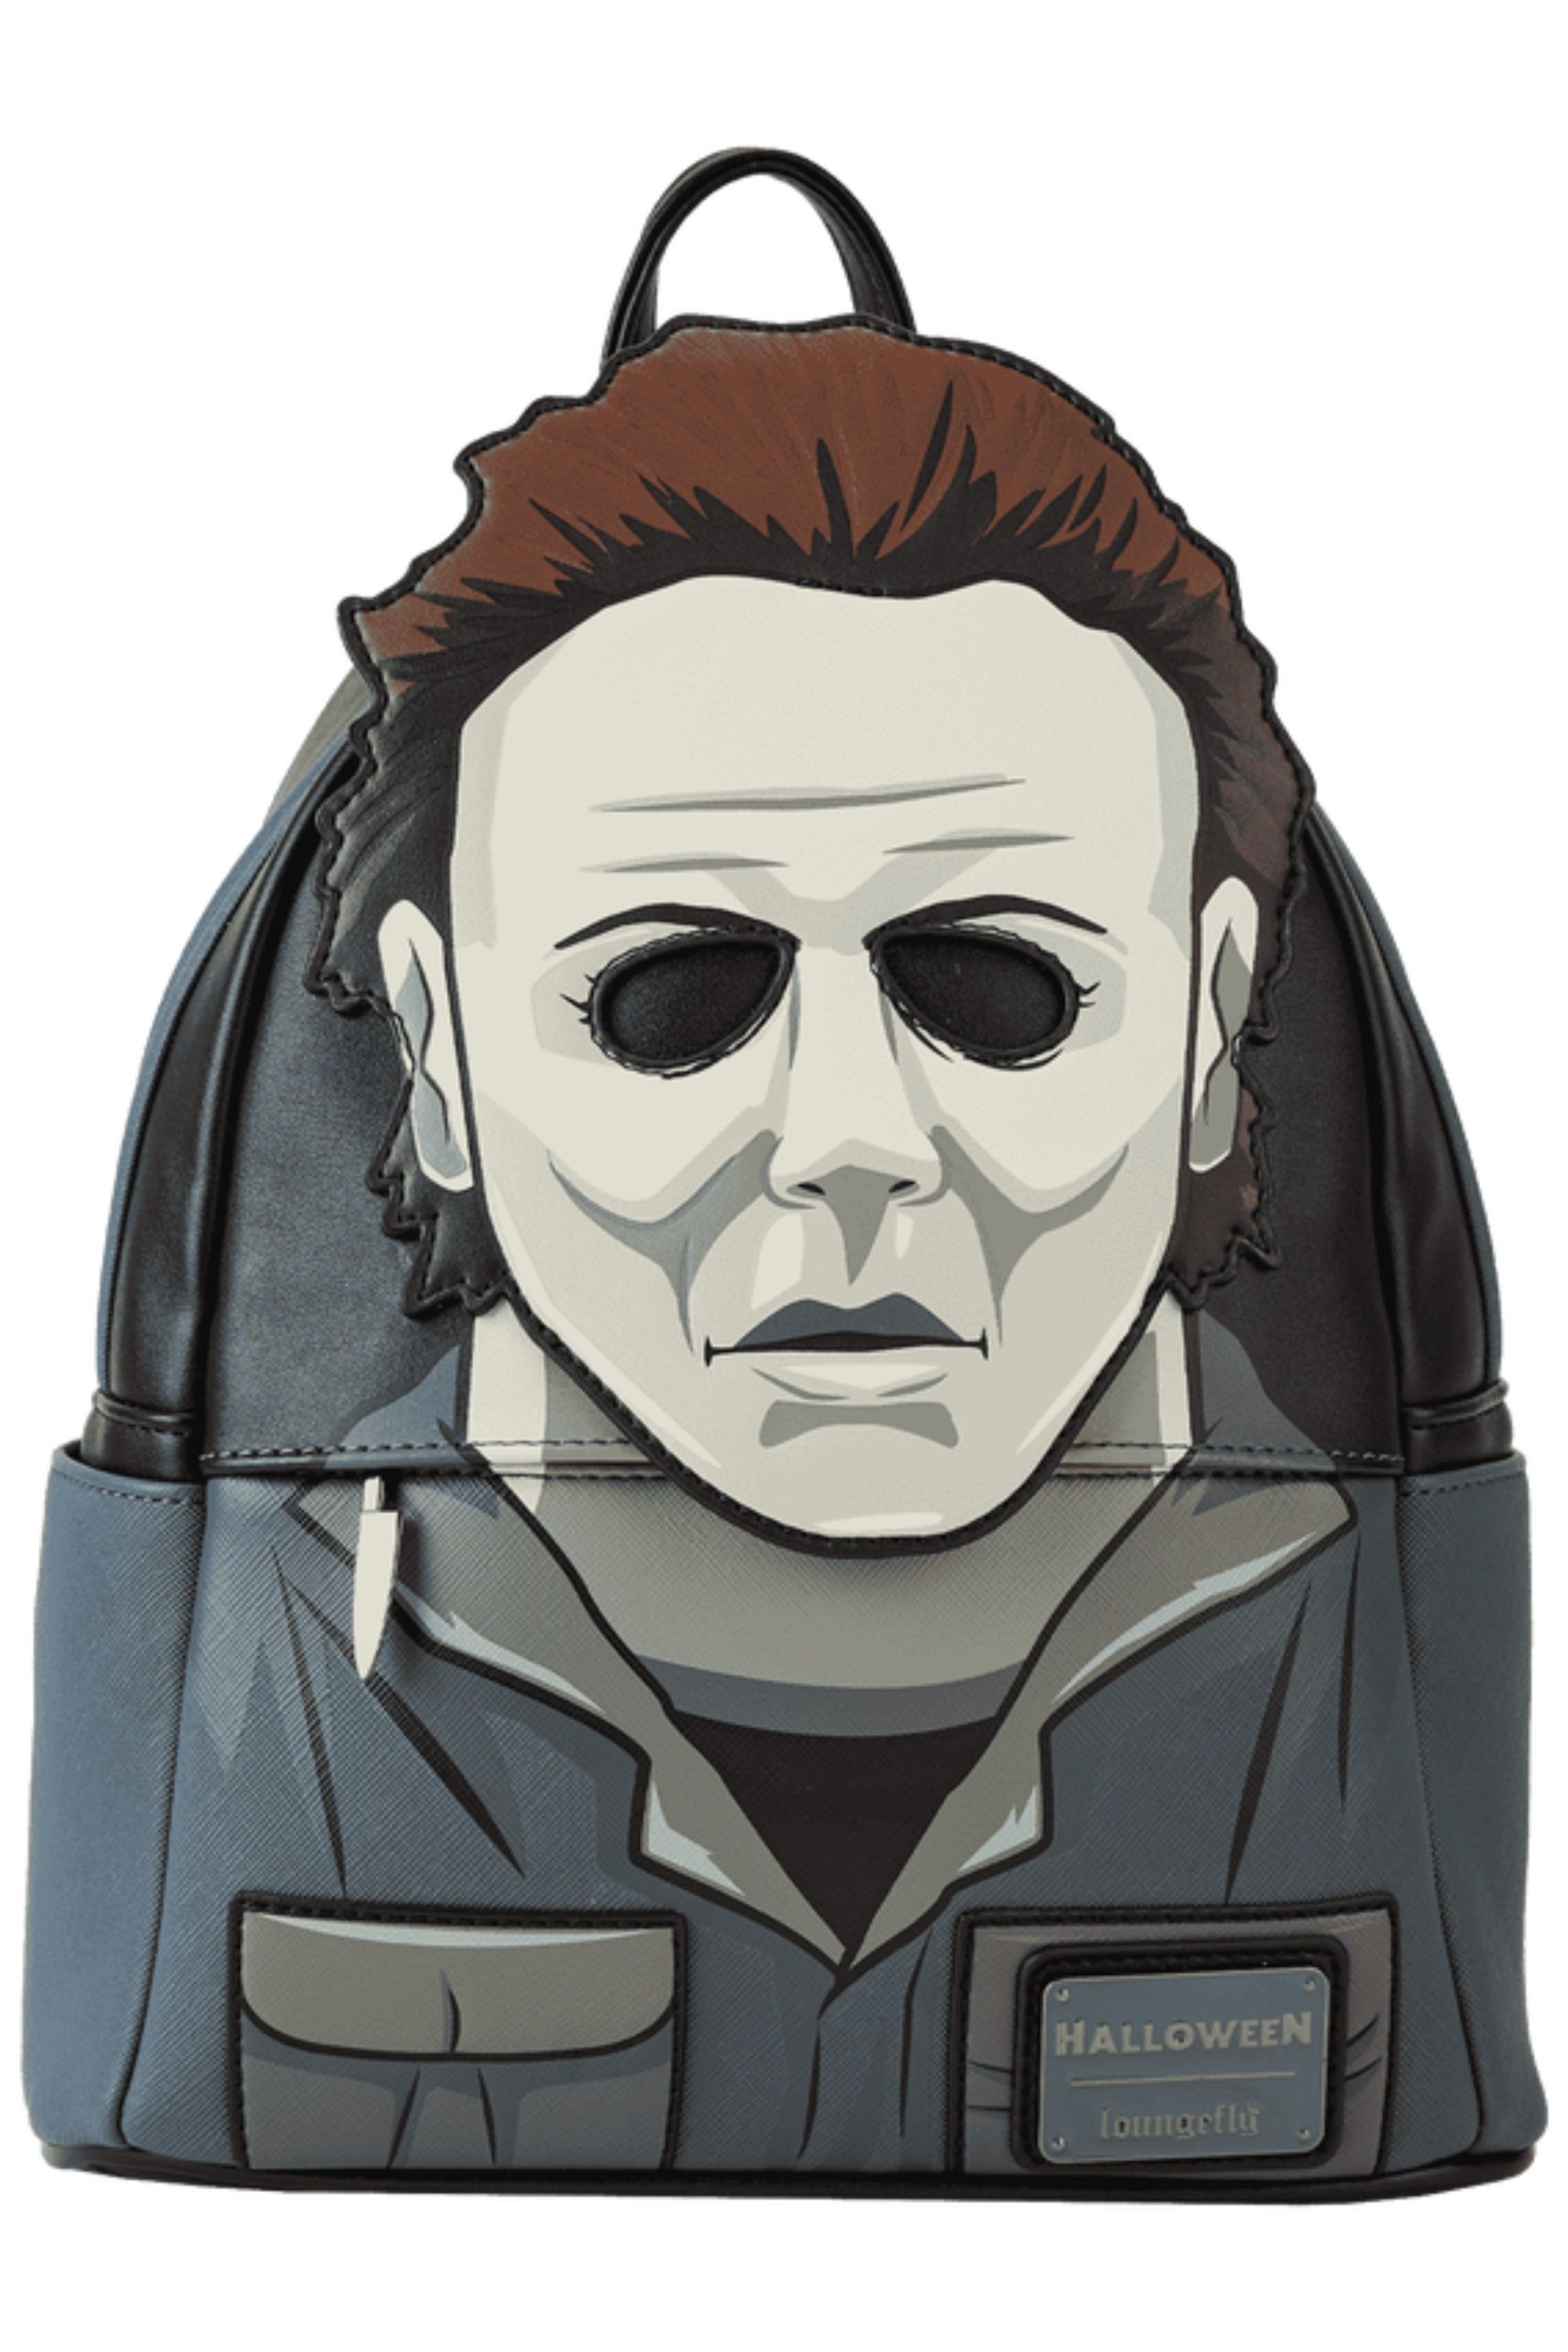 Halloween Michael Myers Glow Mask Loungefly Backpack